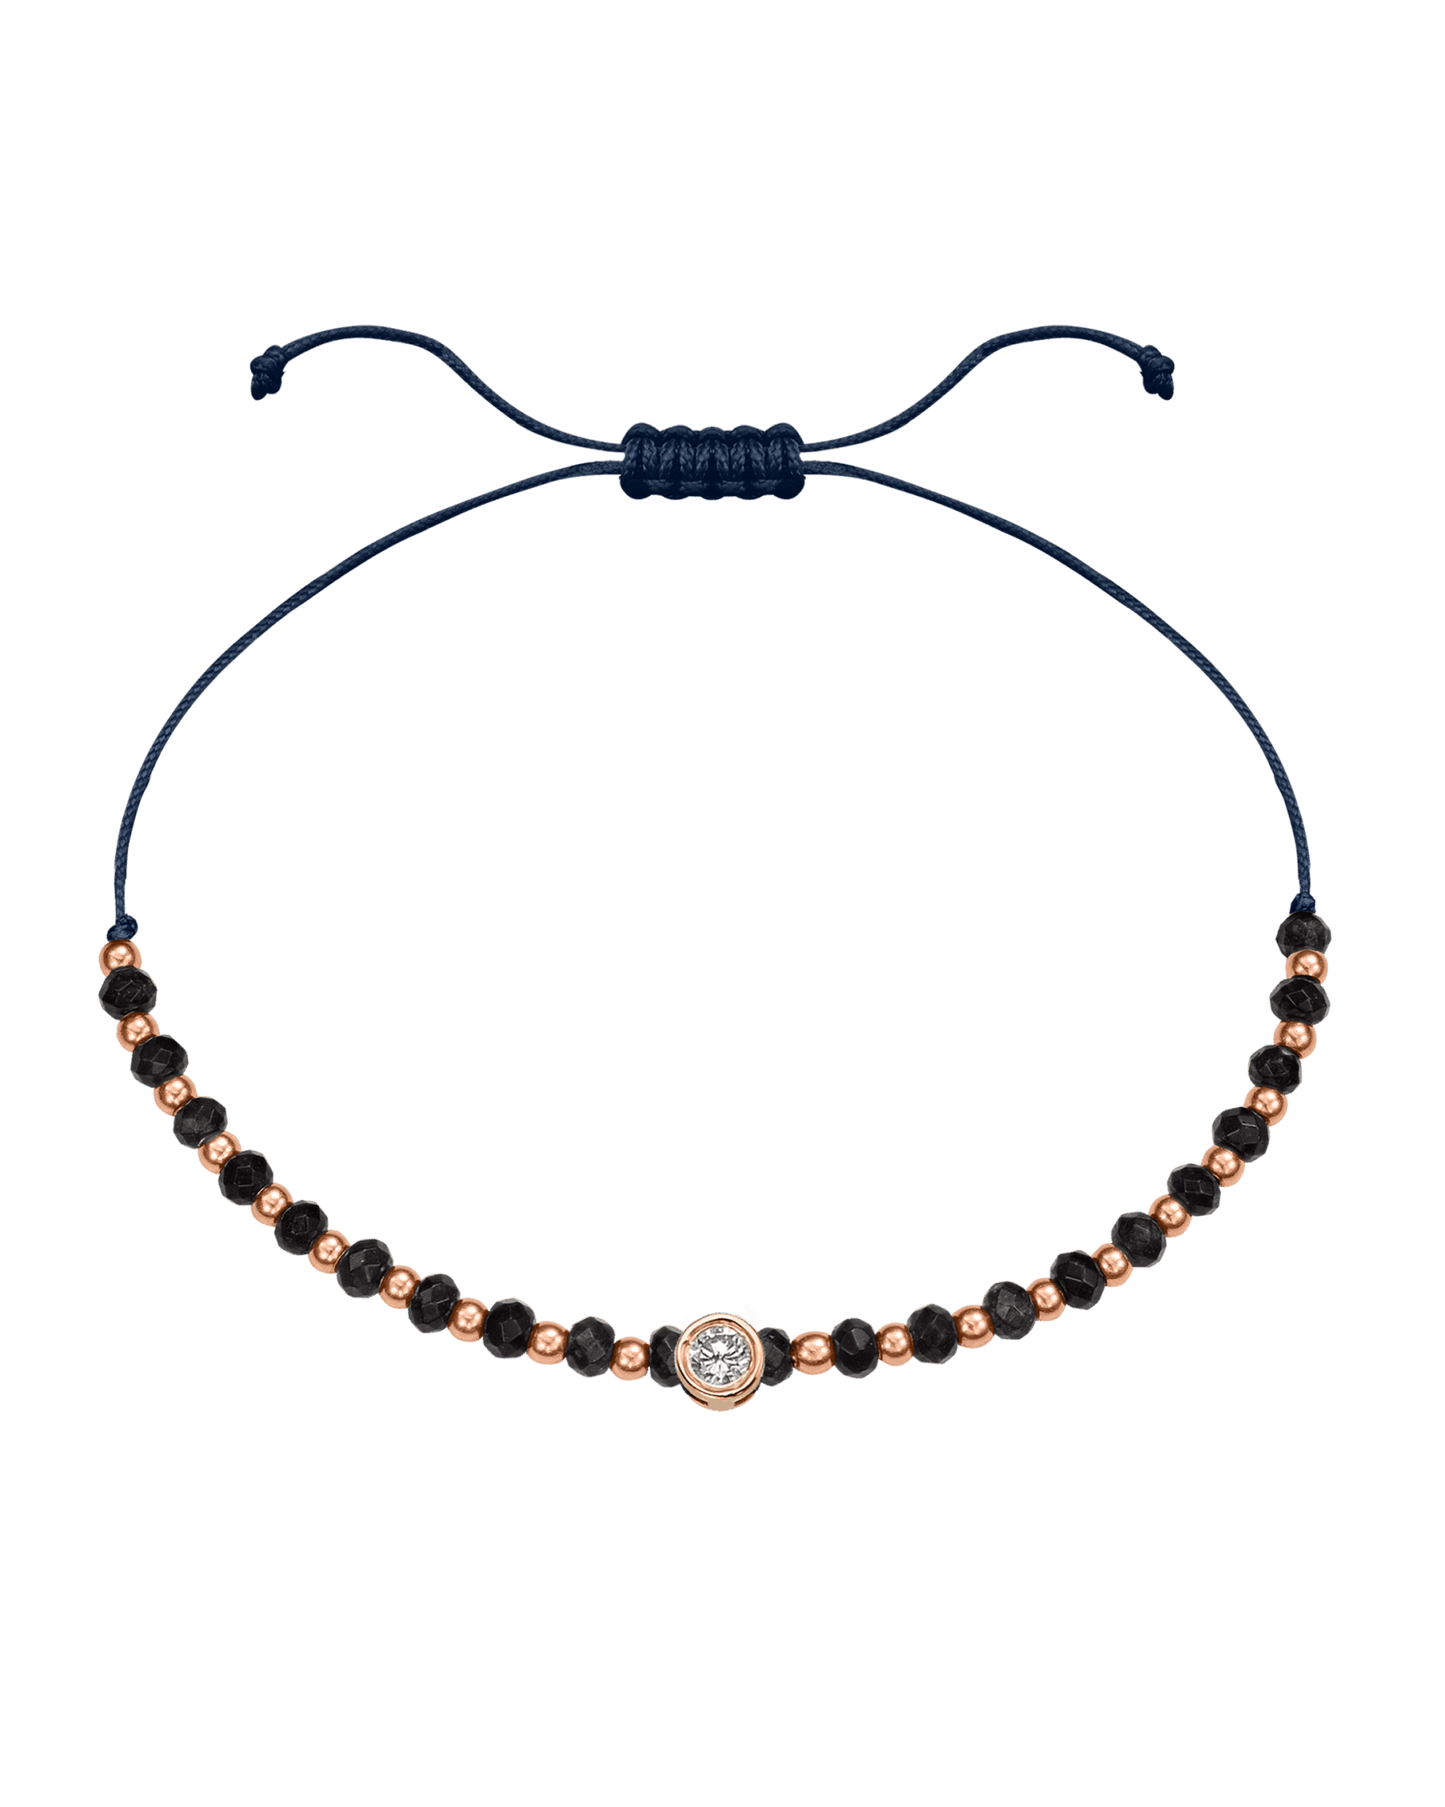 Black Onyx Gemstone String of Love Bracelet for Protection - 14K Rose Gold Bracelets 14K Solid Gold Navy Blue Large: 0.1ct 